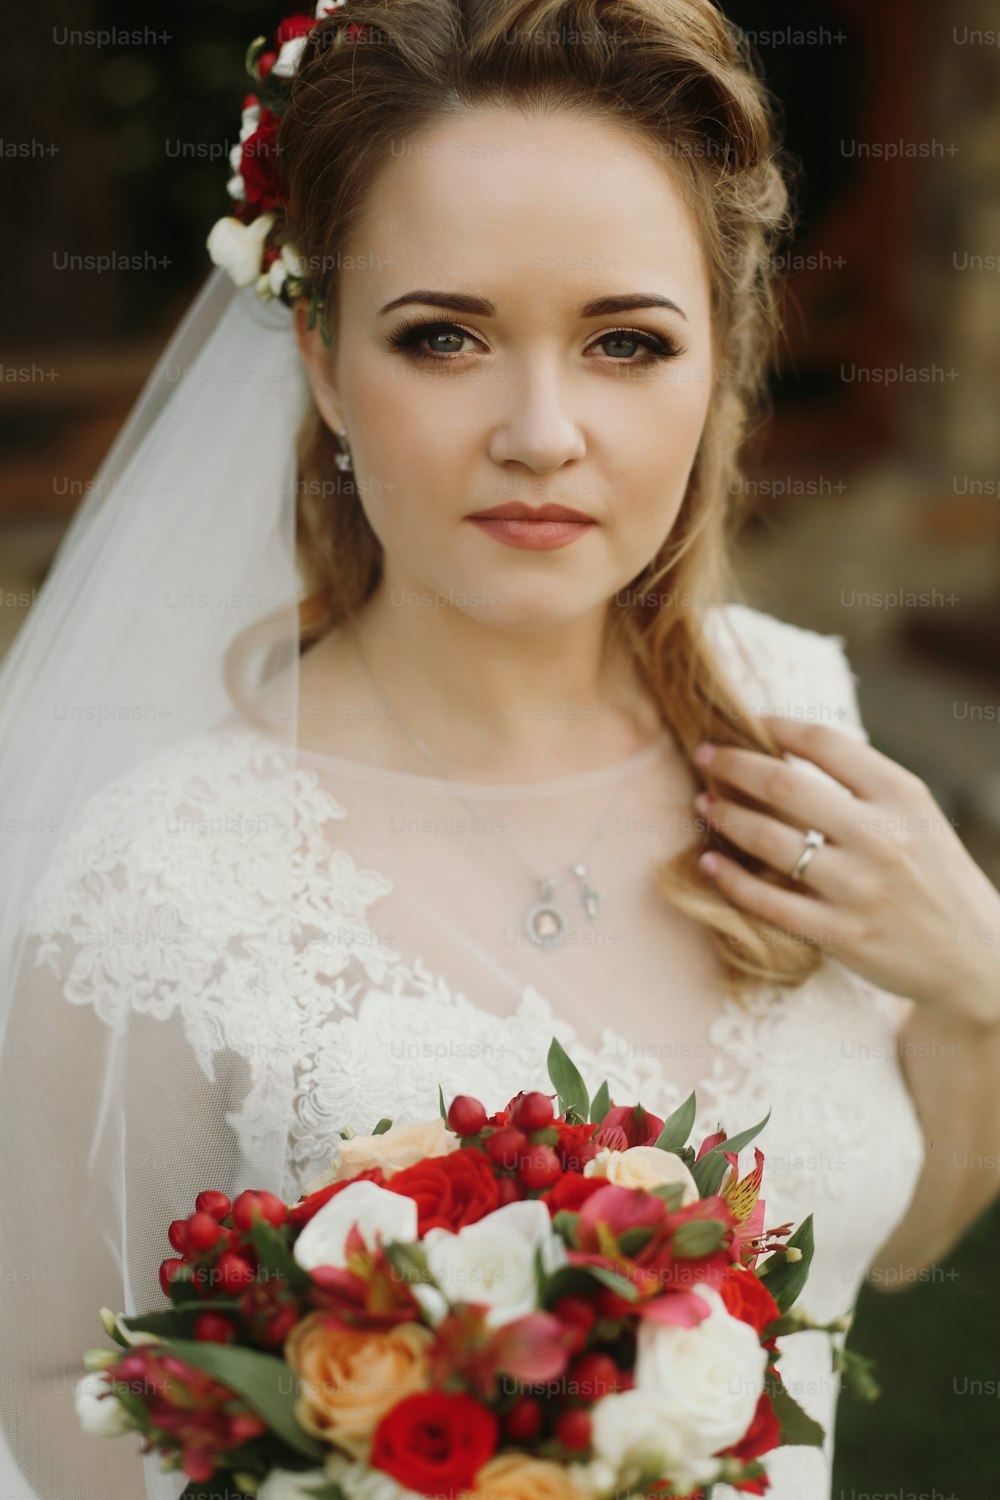 Portrait de belle mariée avec bouquet, magnifique mariée blonde en robe de mariée en dentelle blanche vintage tenant un bouquet de roses rouges, regard sensuel, femme de conte de fées